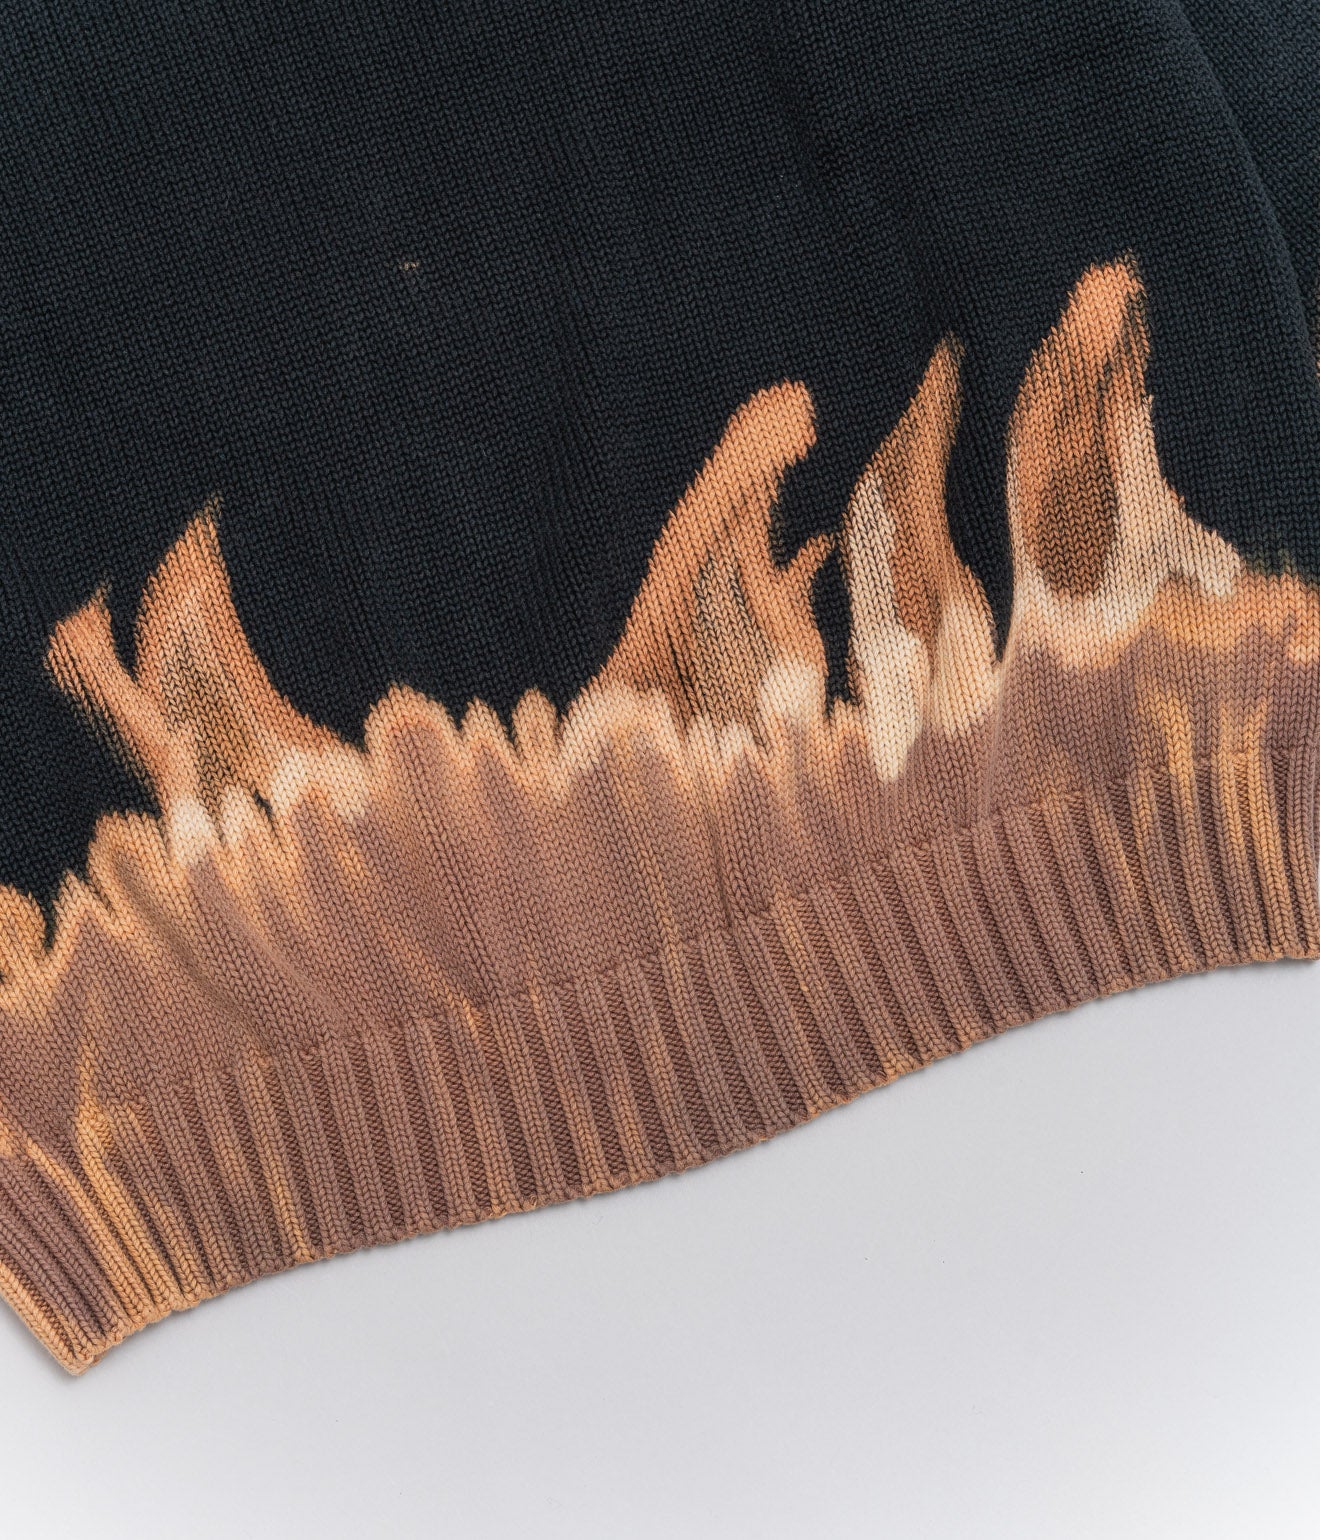 r "Tie-dye cotton sweater fire pattern" Black 1 - WEAREALLANIMALS